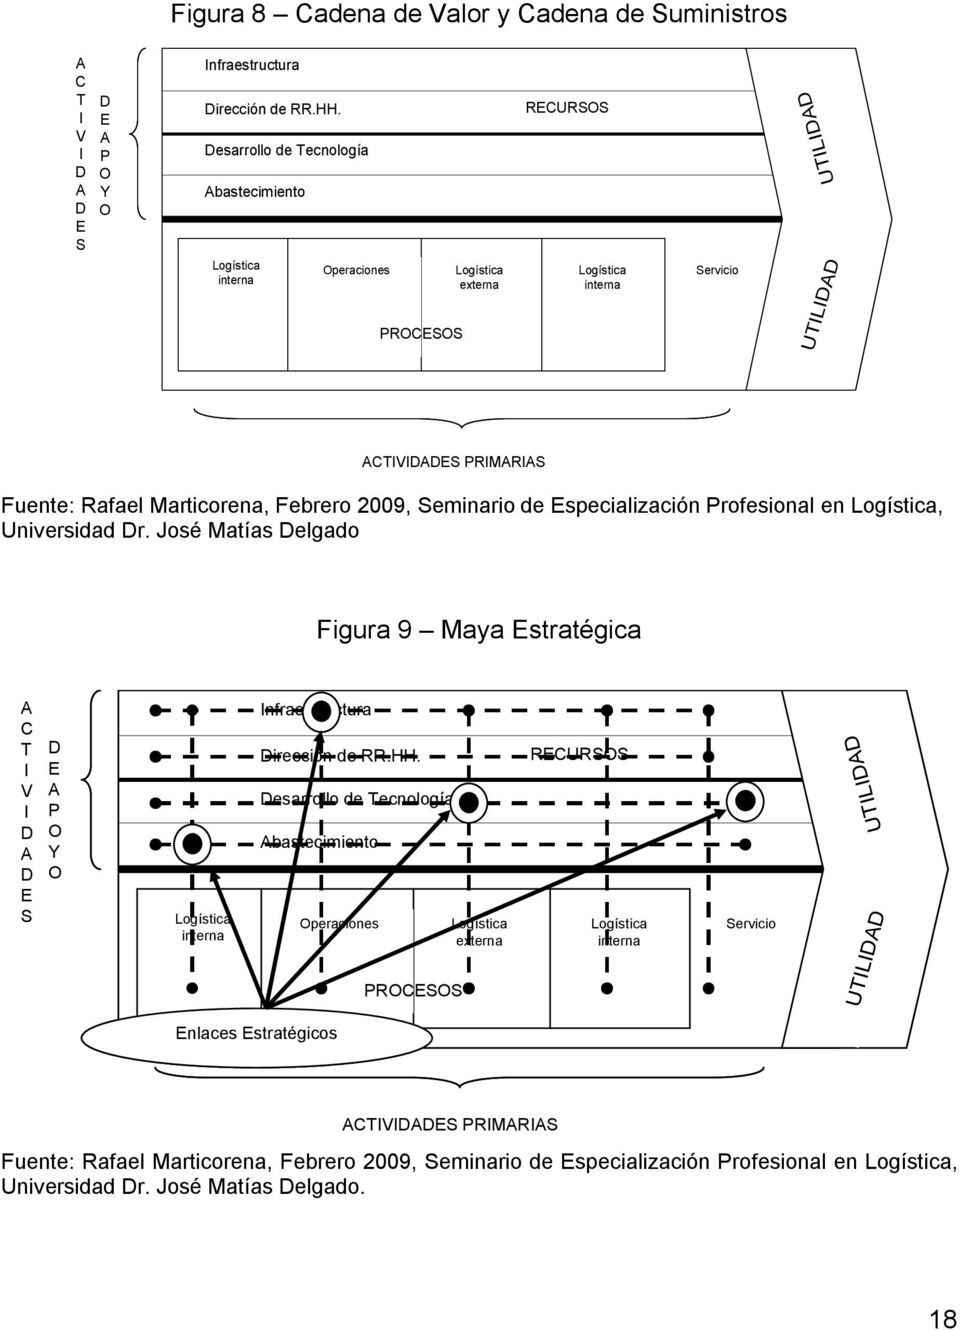 specialización Profesional en, Universidad r. José Matías elgado Figura 9 Maya stratégica C T V S P Y nfraestructura irección de RR.HH.